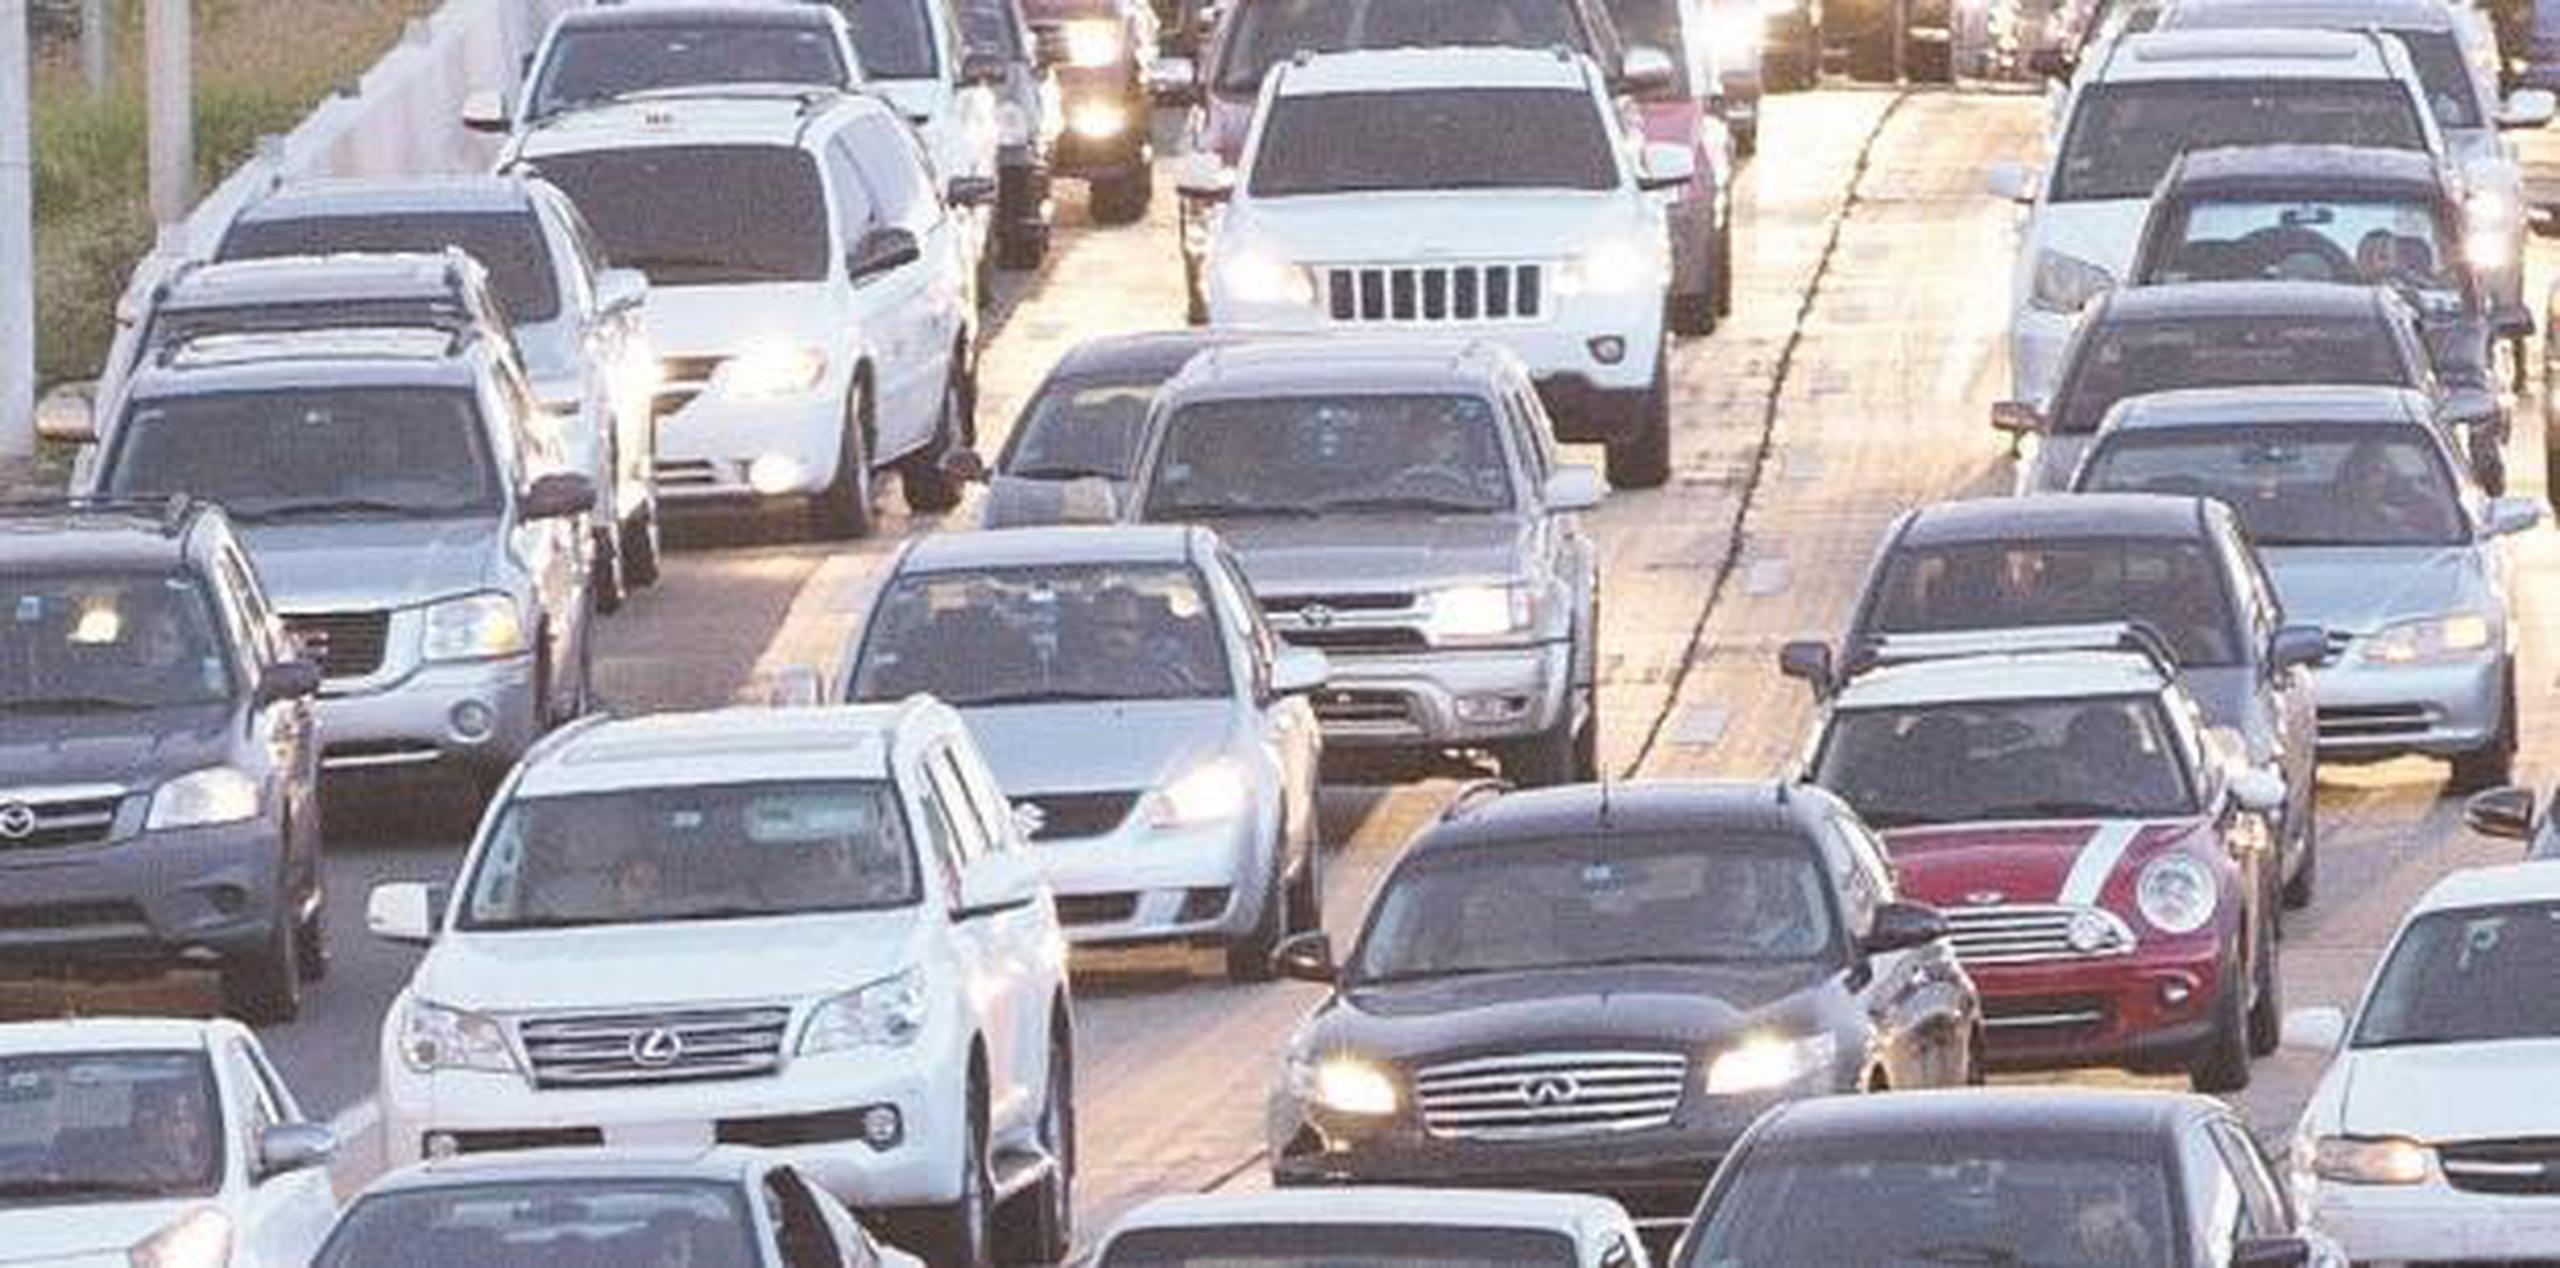 La División de Patrullas de Carreteras de San Juan tiene a cargo la pesquisa y se hacen gestiones para remover la carga. (Archivo)